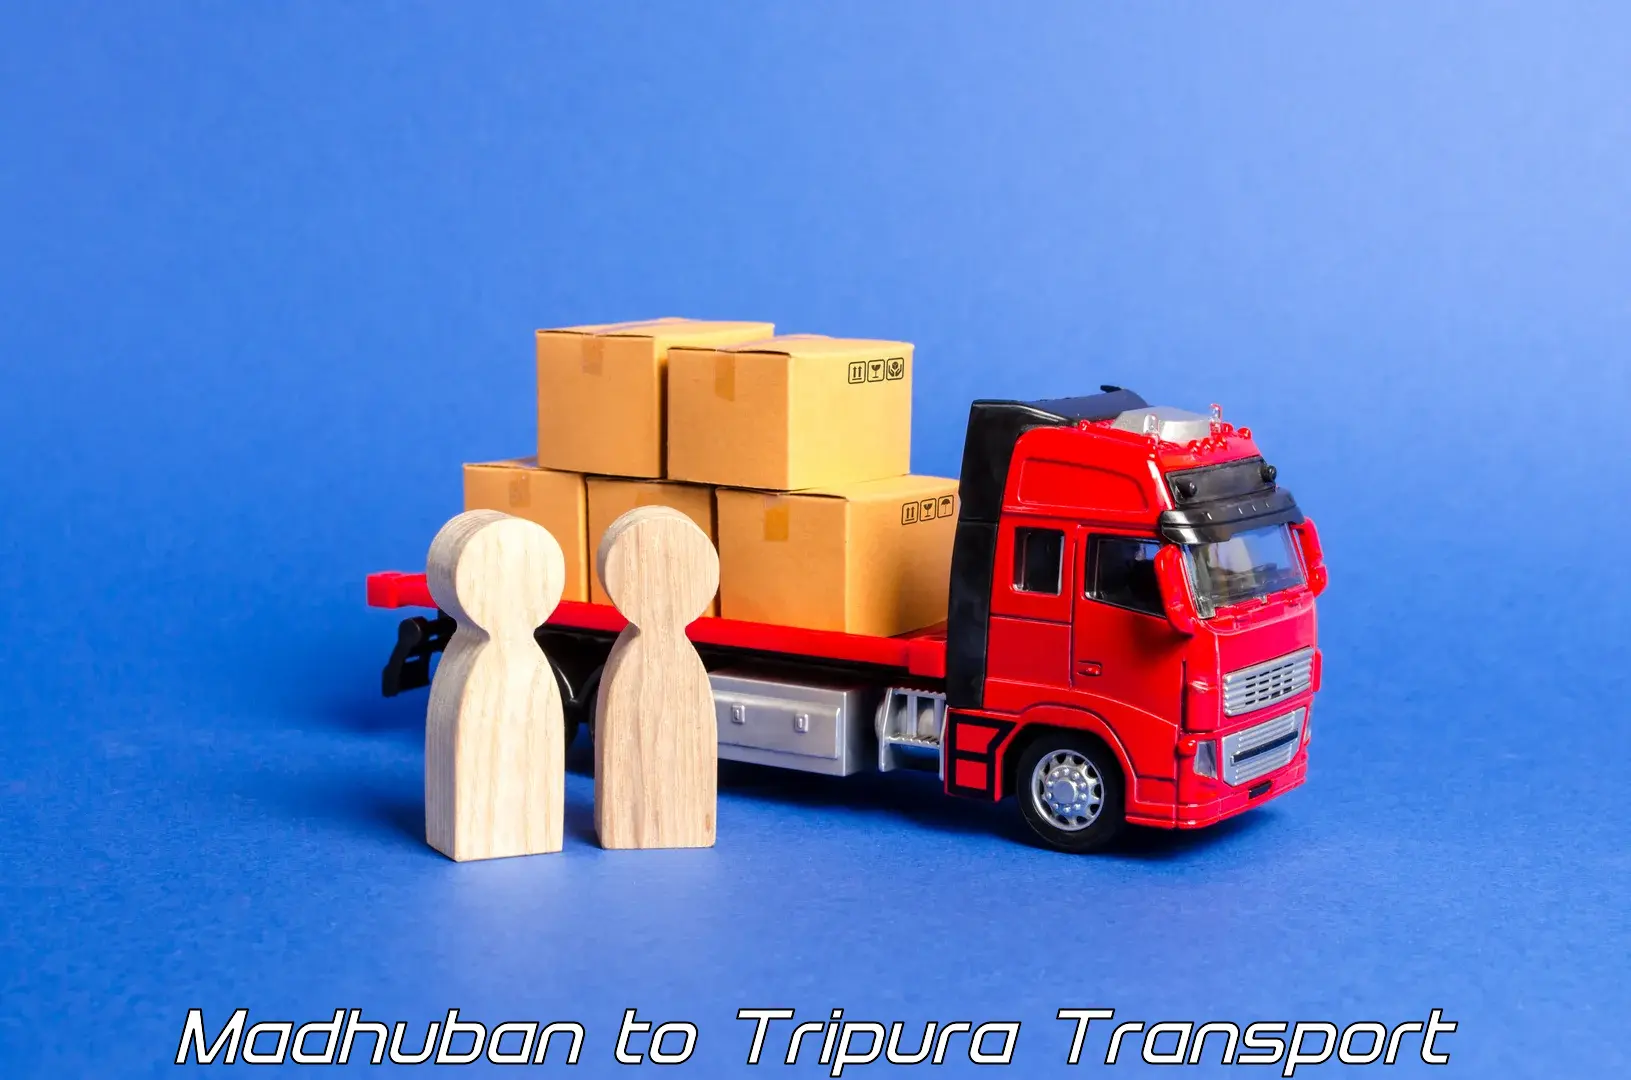 Vehicle transport services Madhuban to Bishalgarh